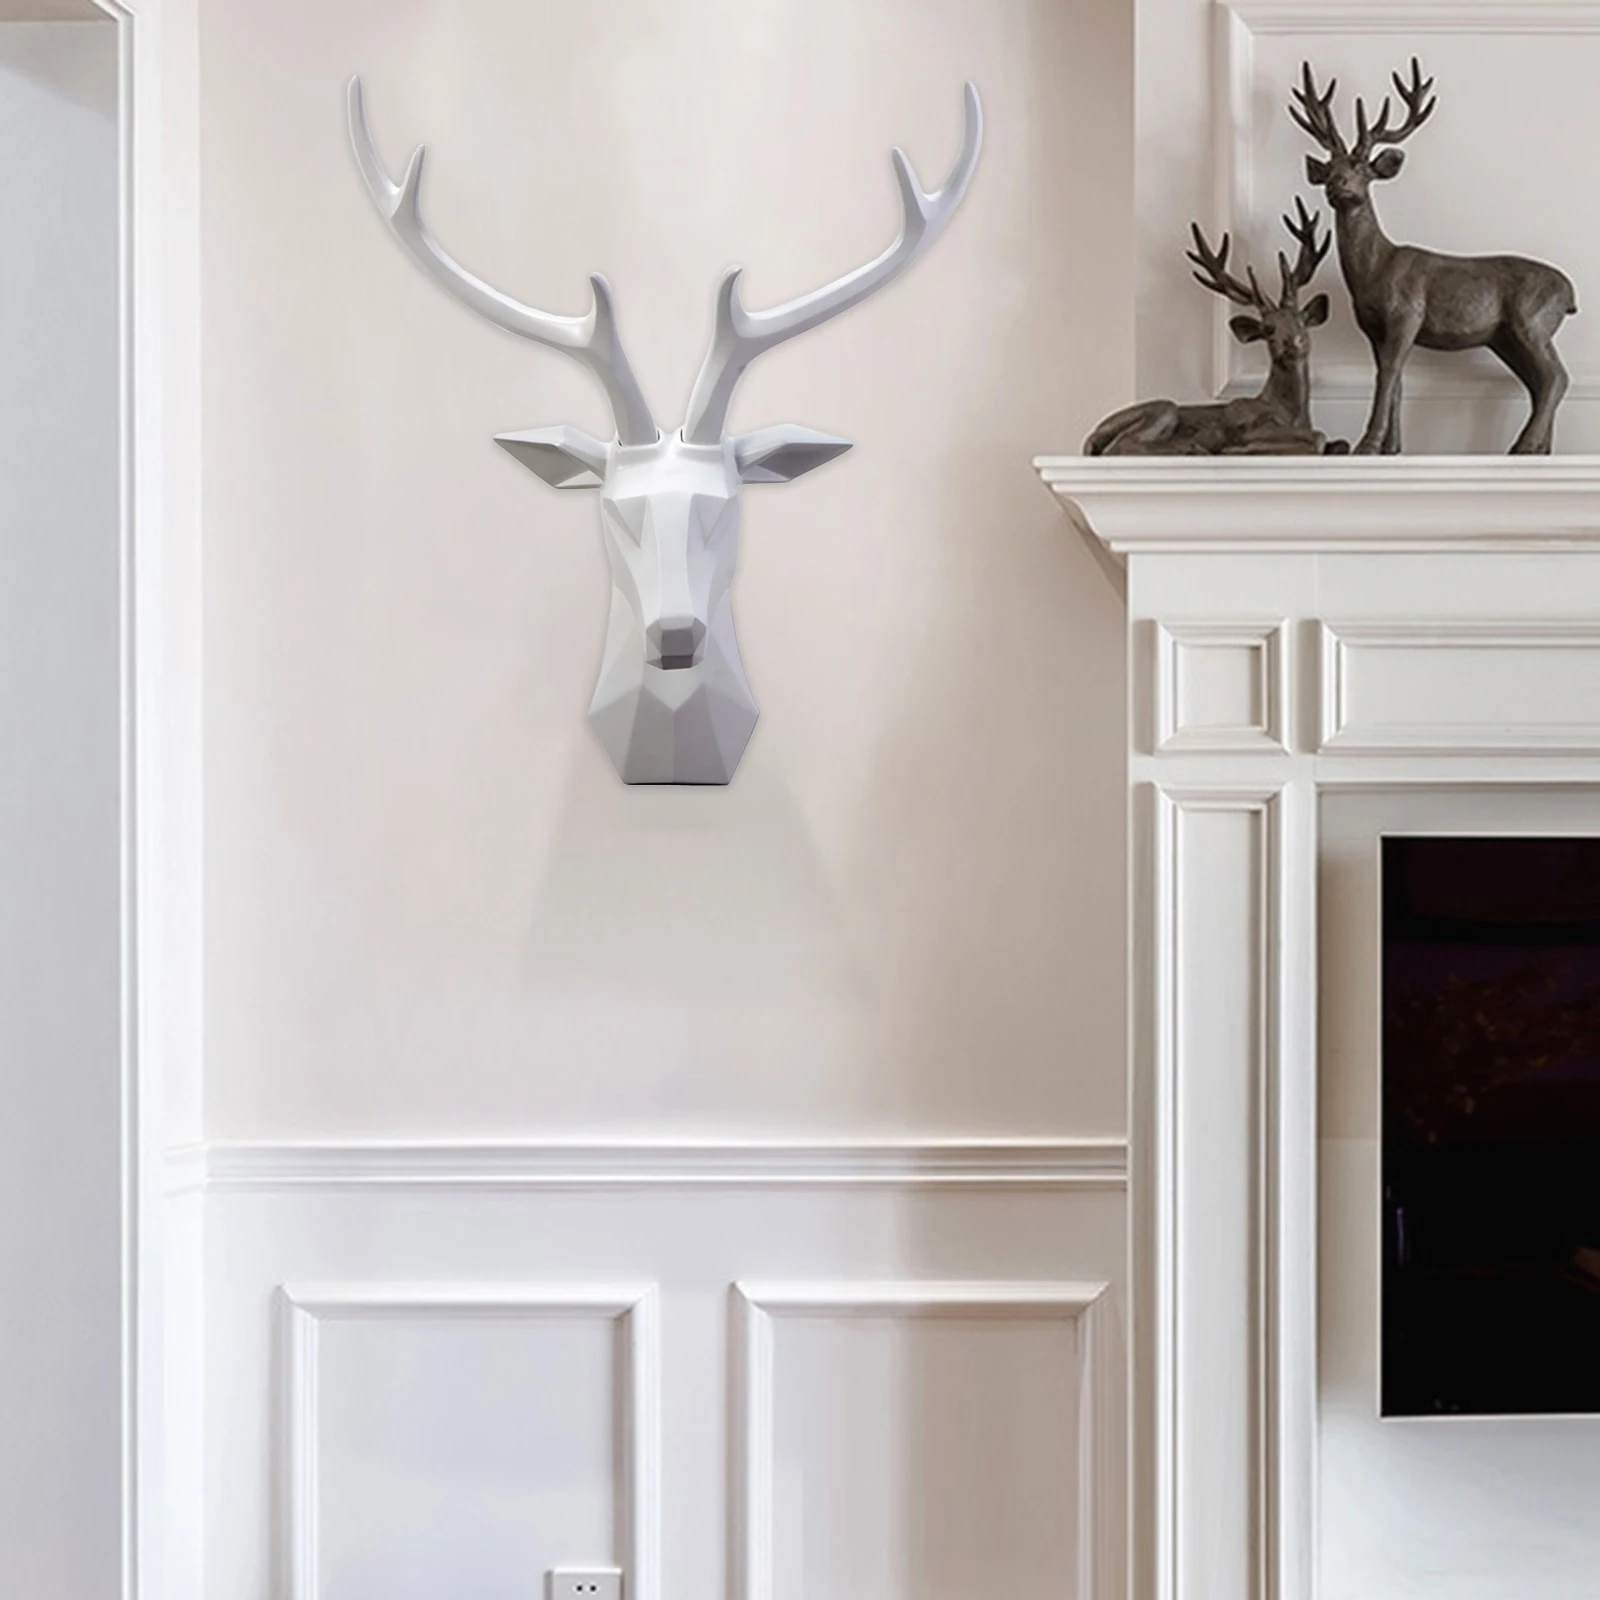 Deer Head Wall Sculpture Home Decor Living Room Cabinet Art Statue Ornaments